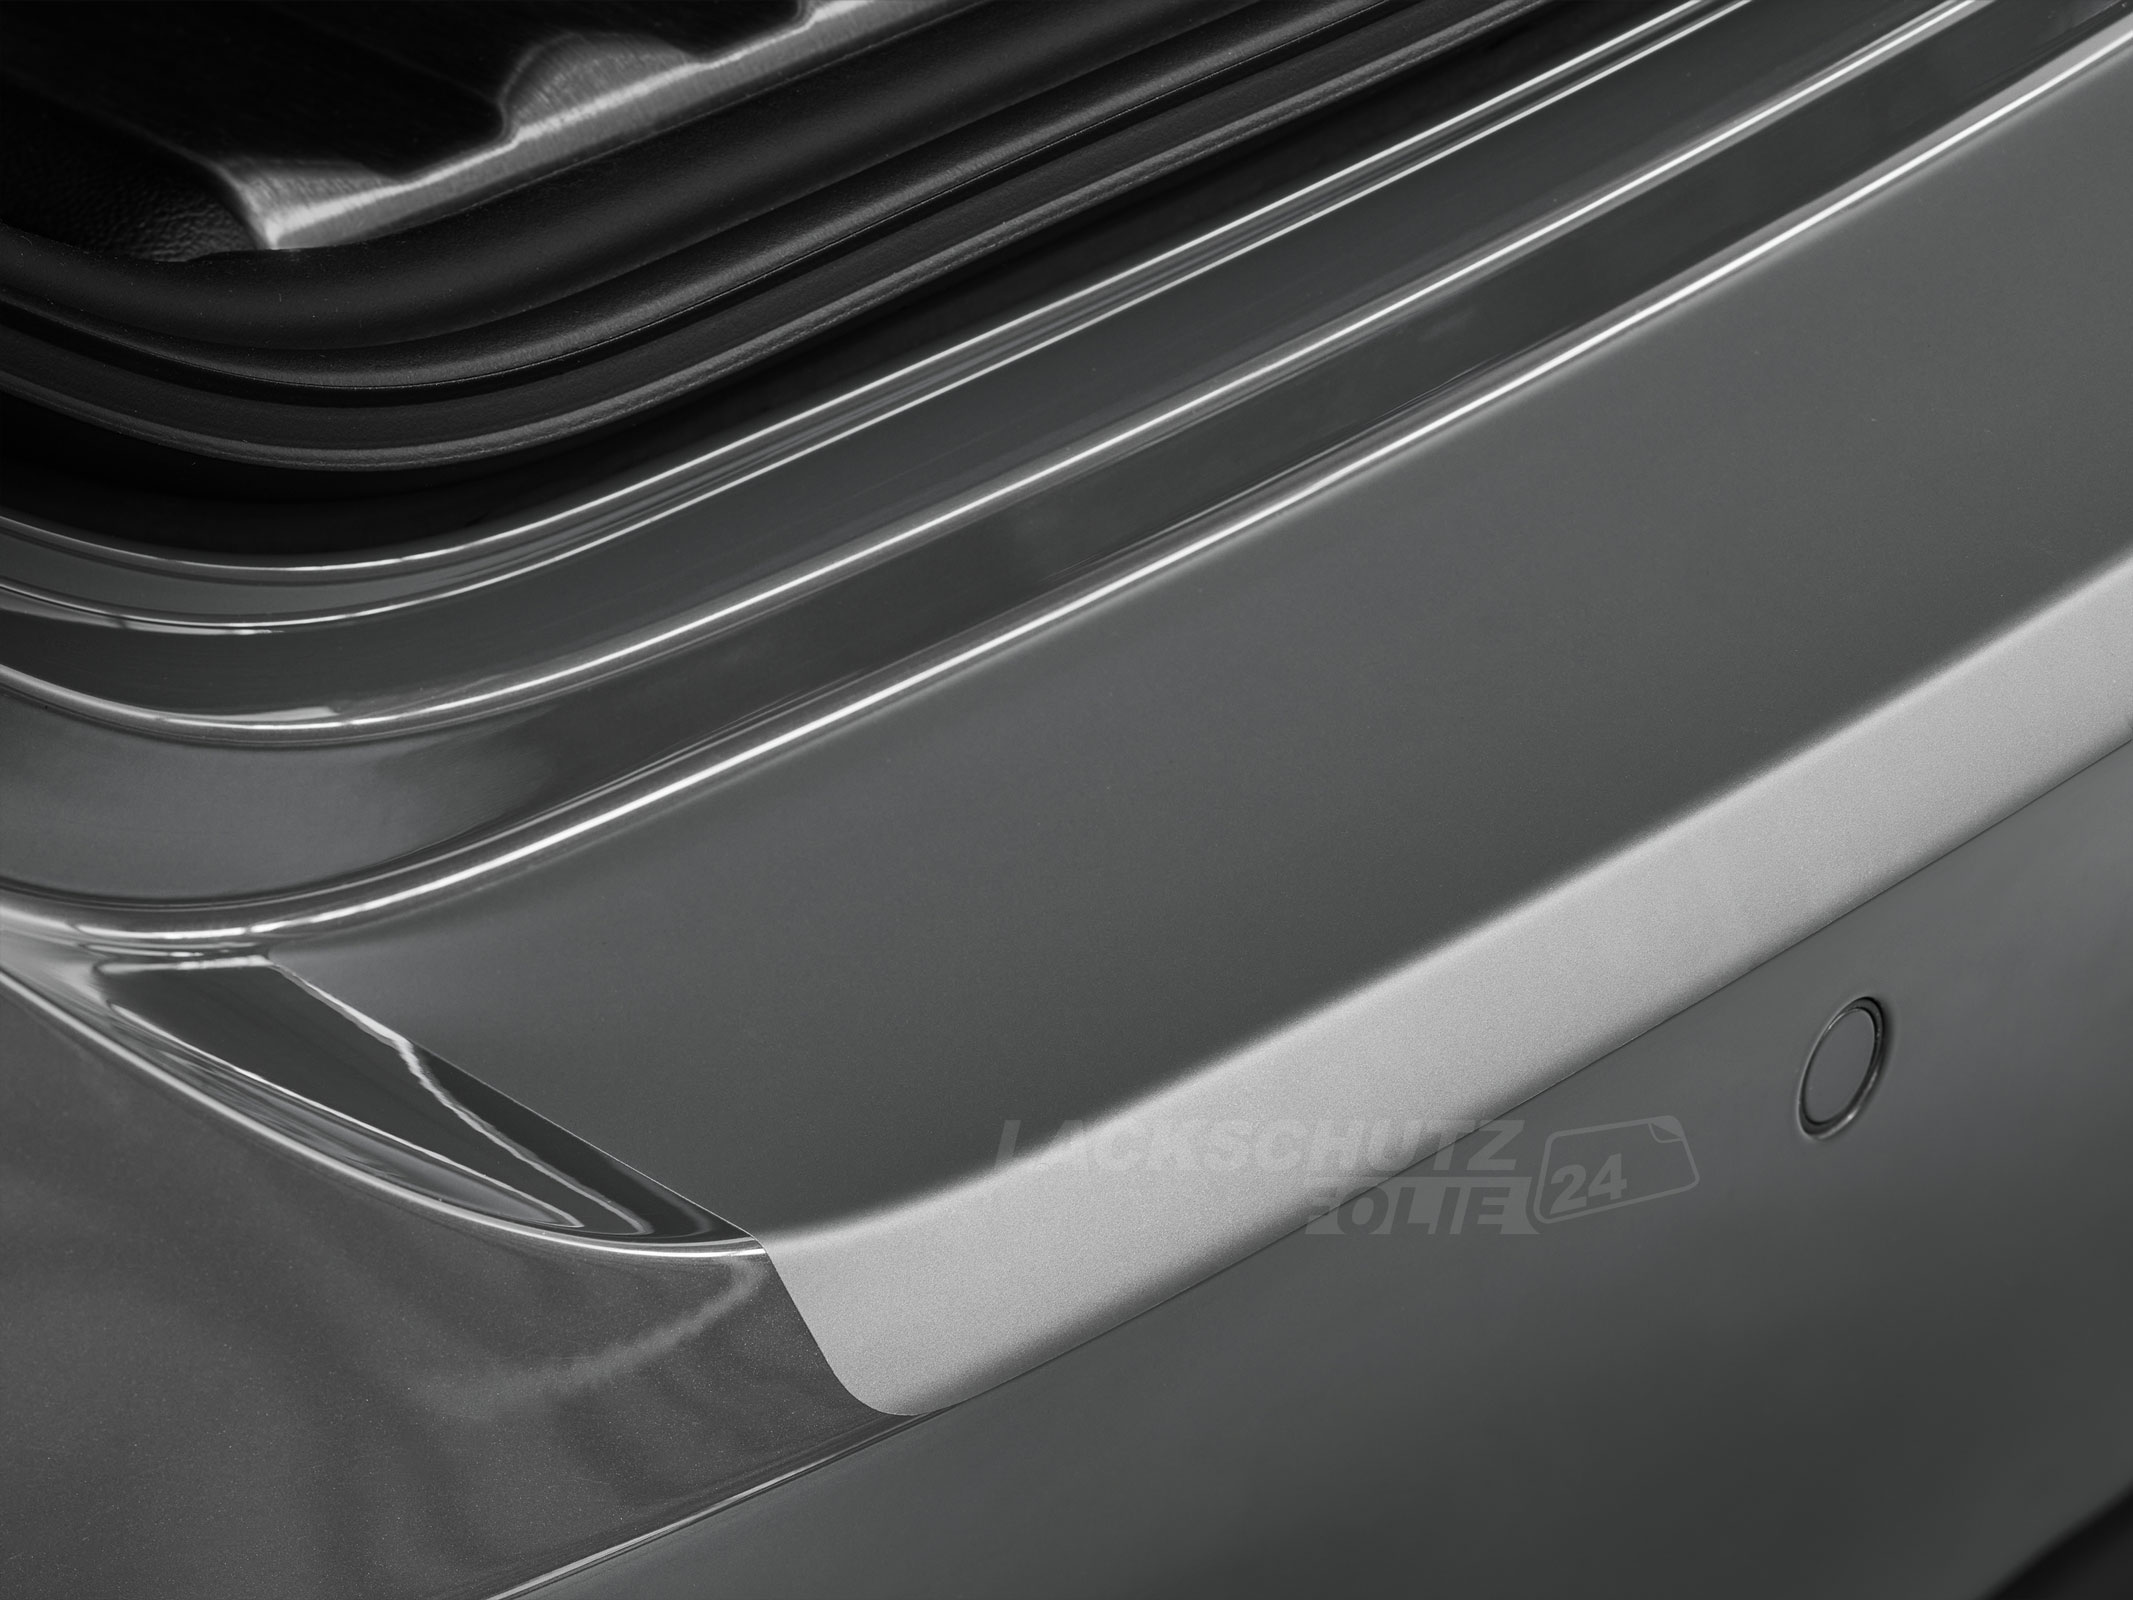 Ladekantenschutzfolie - Transparent Glatt MATT für Hyundai i30cw (Kombi) Typ PD, ab BJ 07/2017 + Facelift